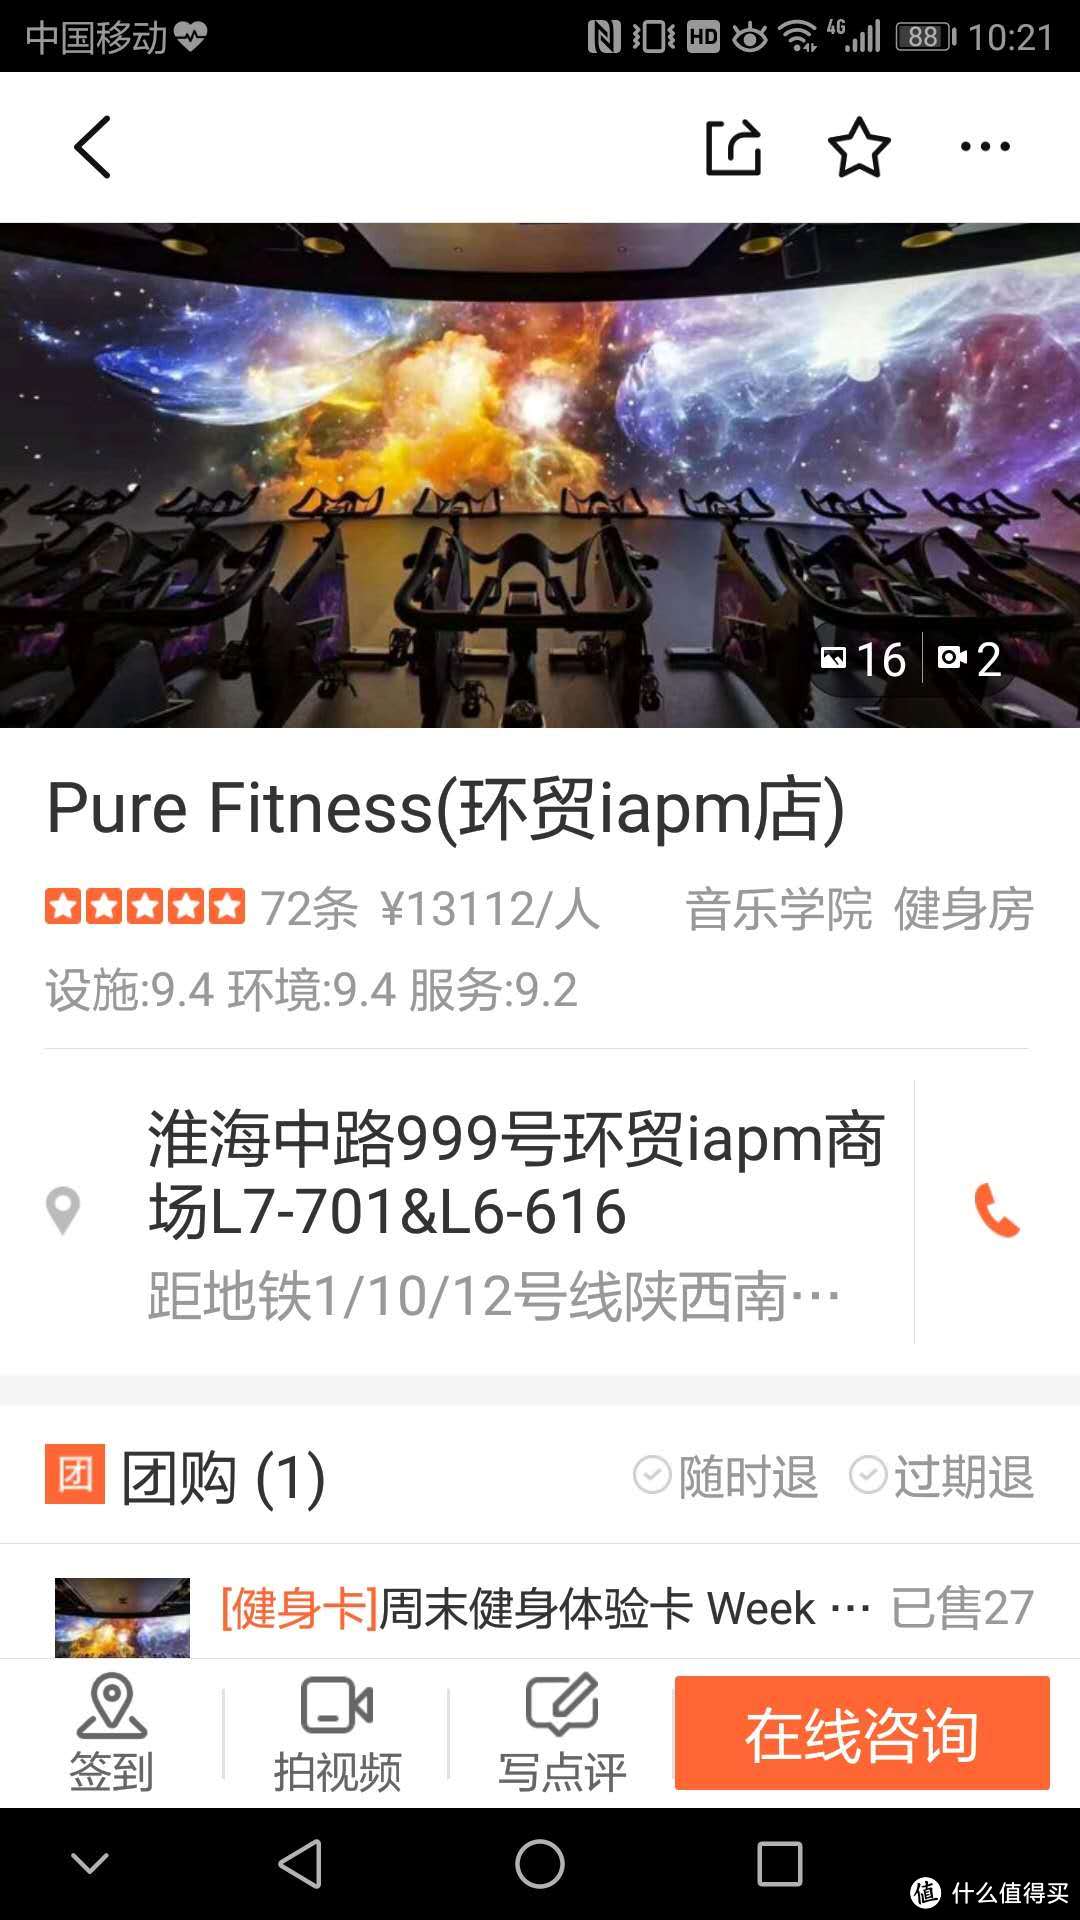 魔都上海几家健身房图鉴